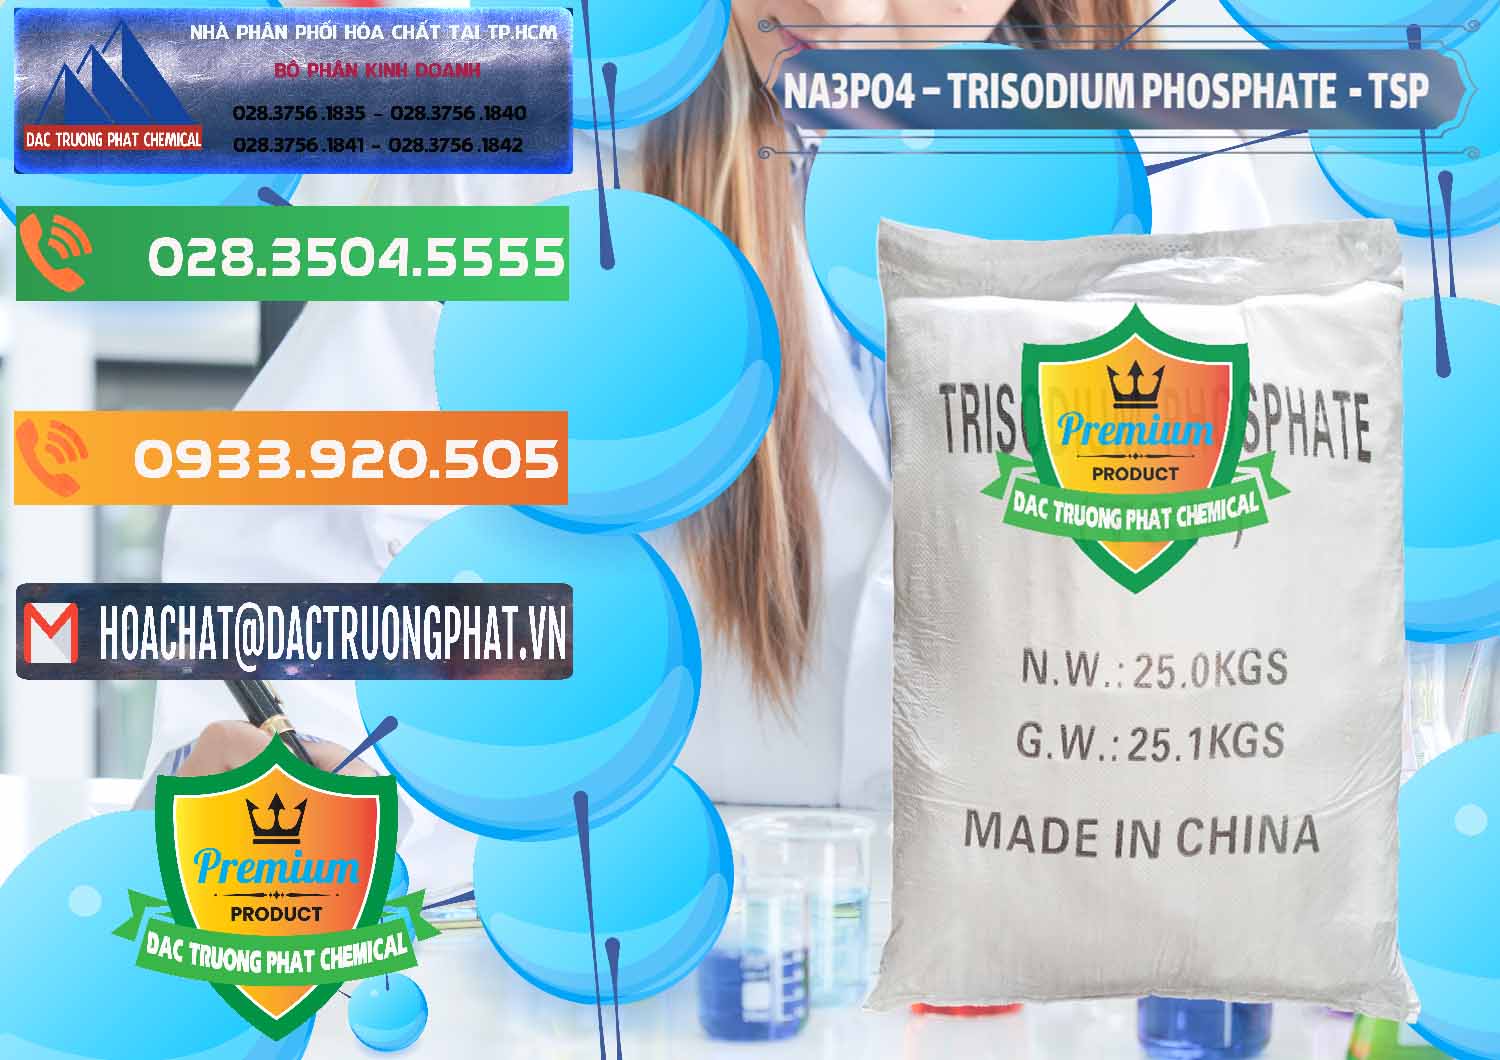 Công ty chuyên bán - cung cấp Na3PO4 – Trisodium Phosphate Trung Quốc China TSP - 0103 - Công ty chuyên bán - phân phối hóa chất tại TP.HCM - hoachatxulynuoc.com.vn